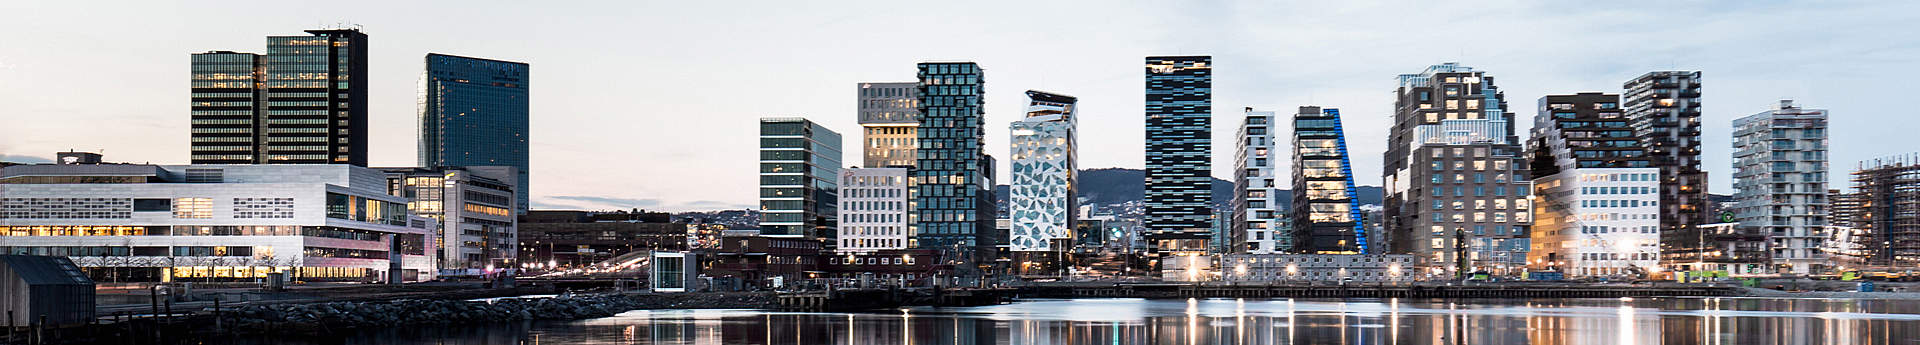 EAN Congress Oslo 2019